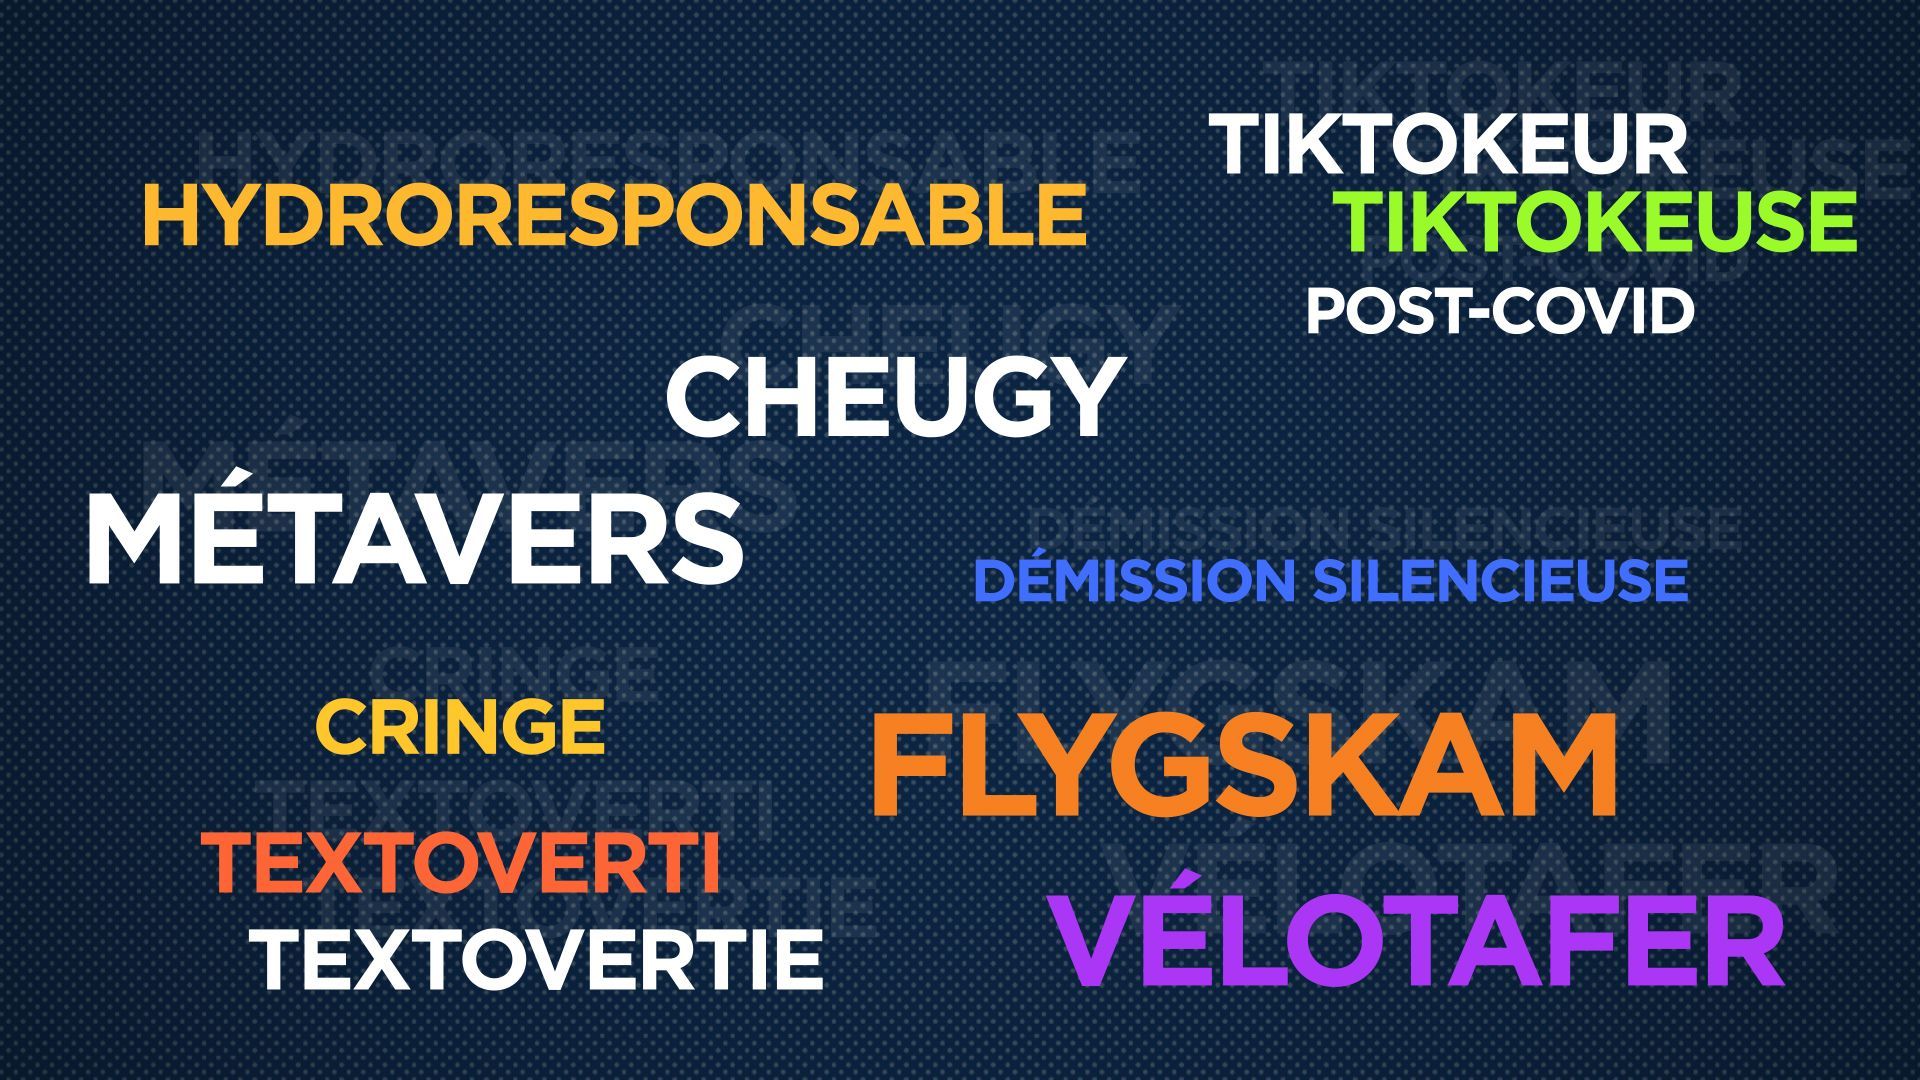 Tiktokeur, flygskam, métavers... Votez pour le nouveau mot de l'année 2022.